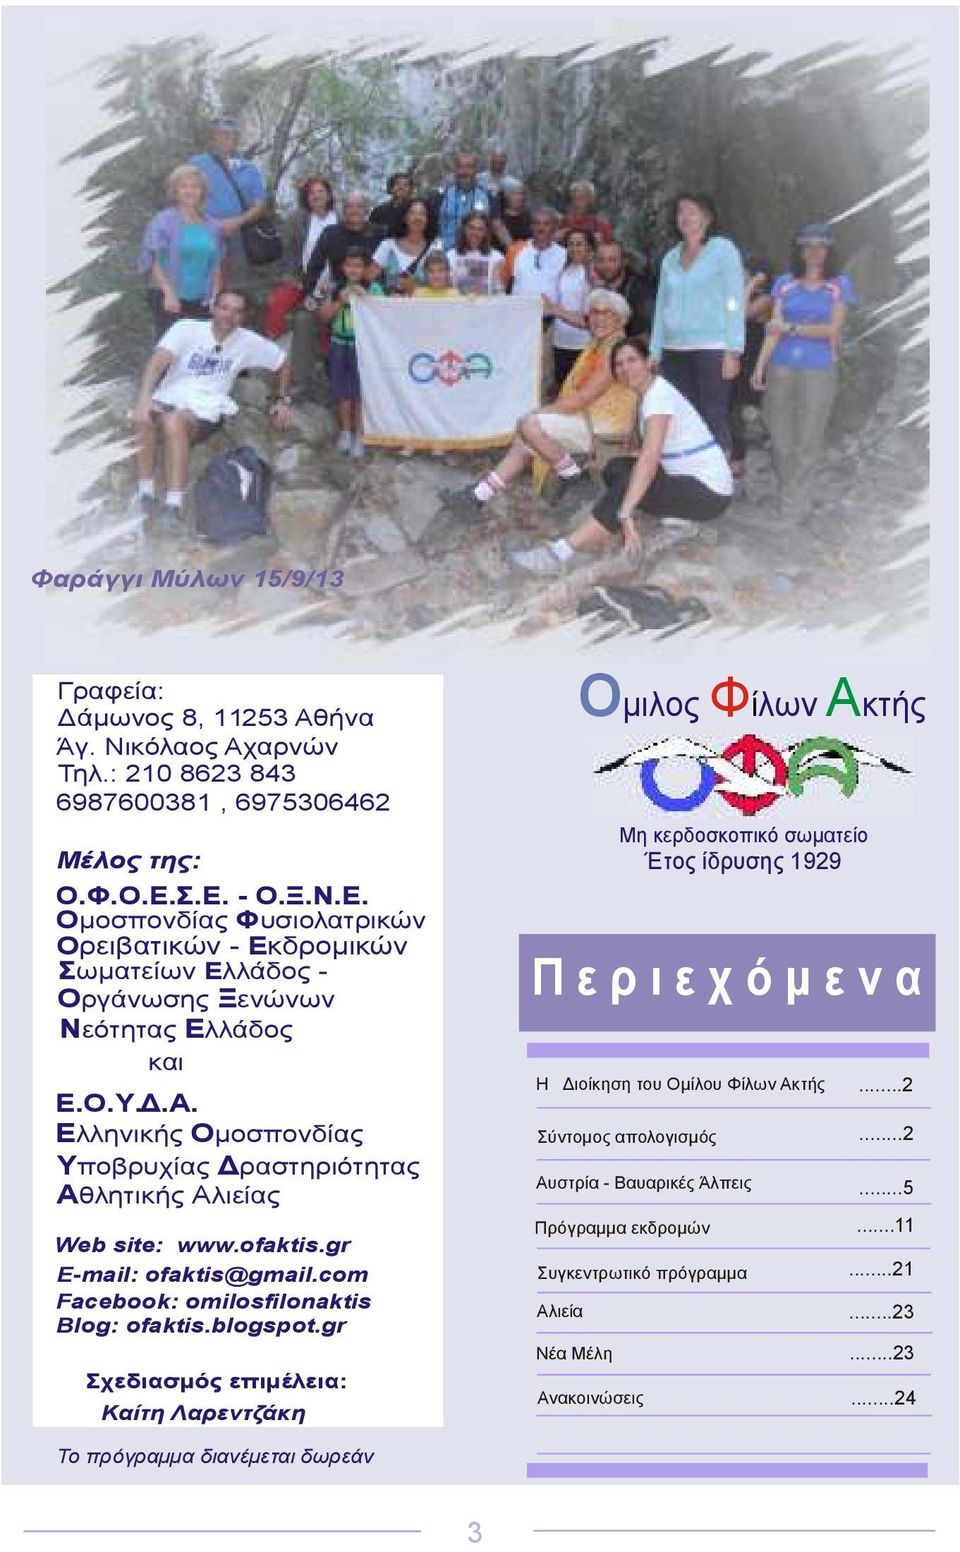 Ελληνικής Οµοσπονδίας Υποβρυχίας ραστηριότητας Αθλητικής Αλιείας Web site: www.ofaktis.gr E-mail: ofaktis@gmail.com Facebook: omilosfilonaktis Blog: ofaktis.blogspot.